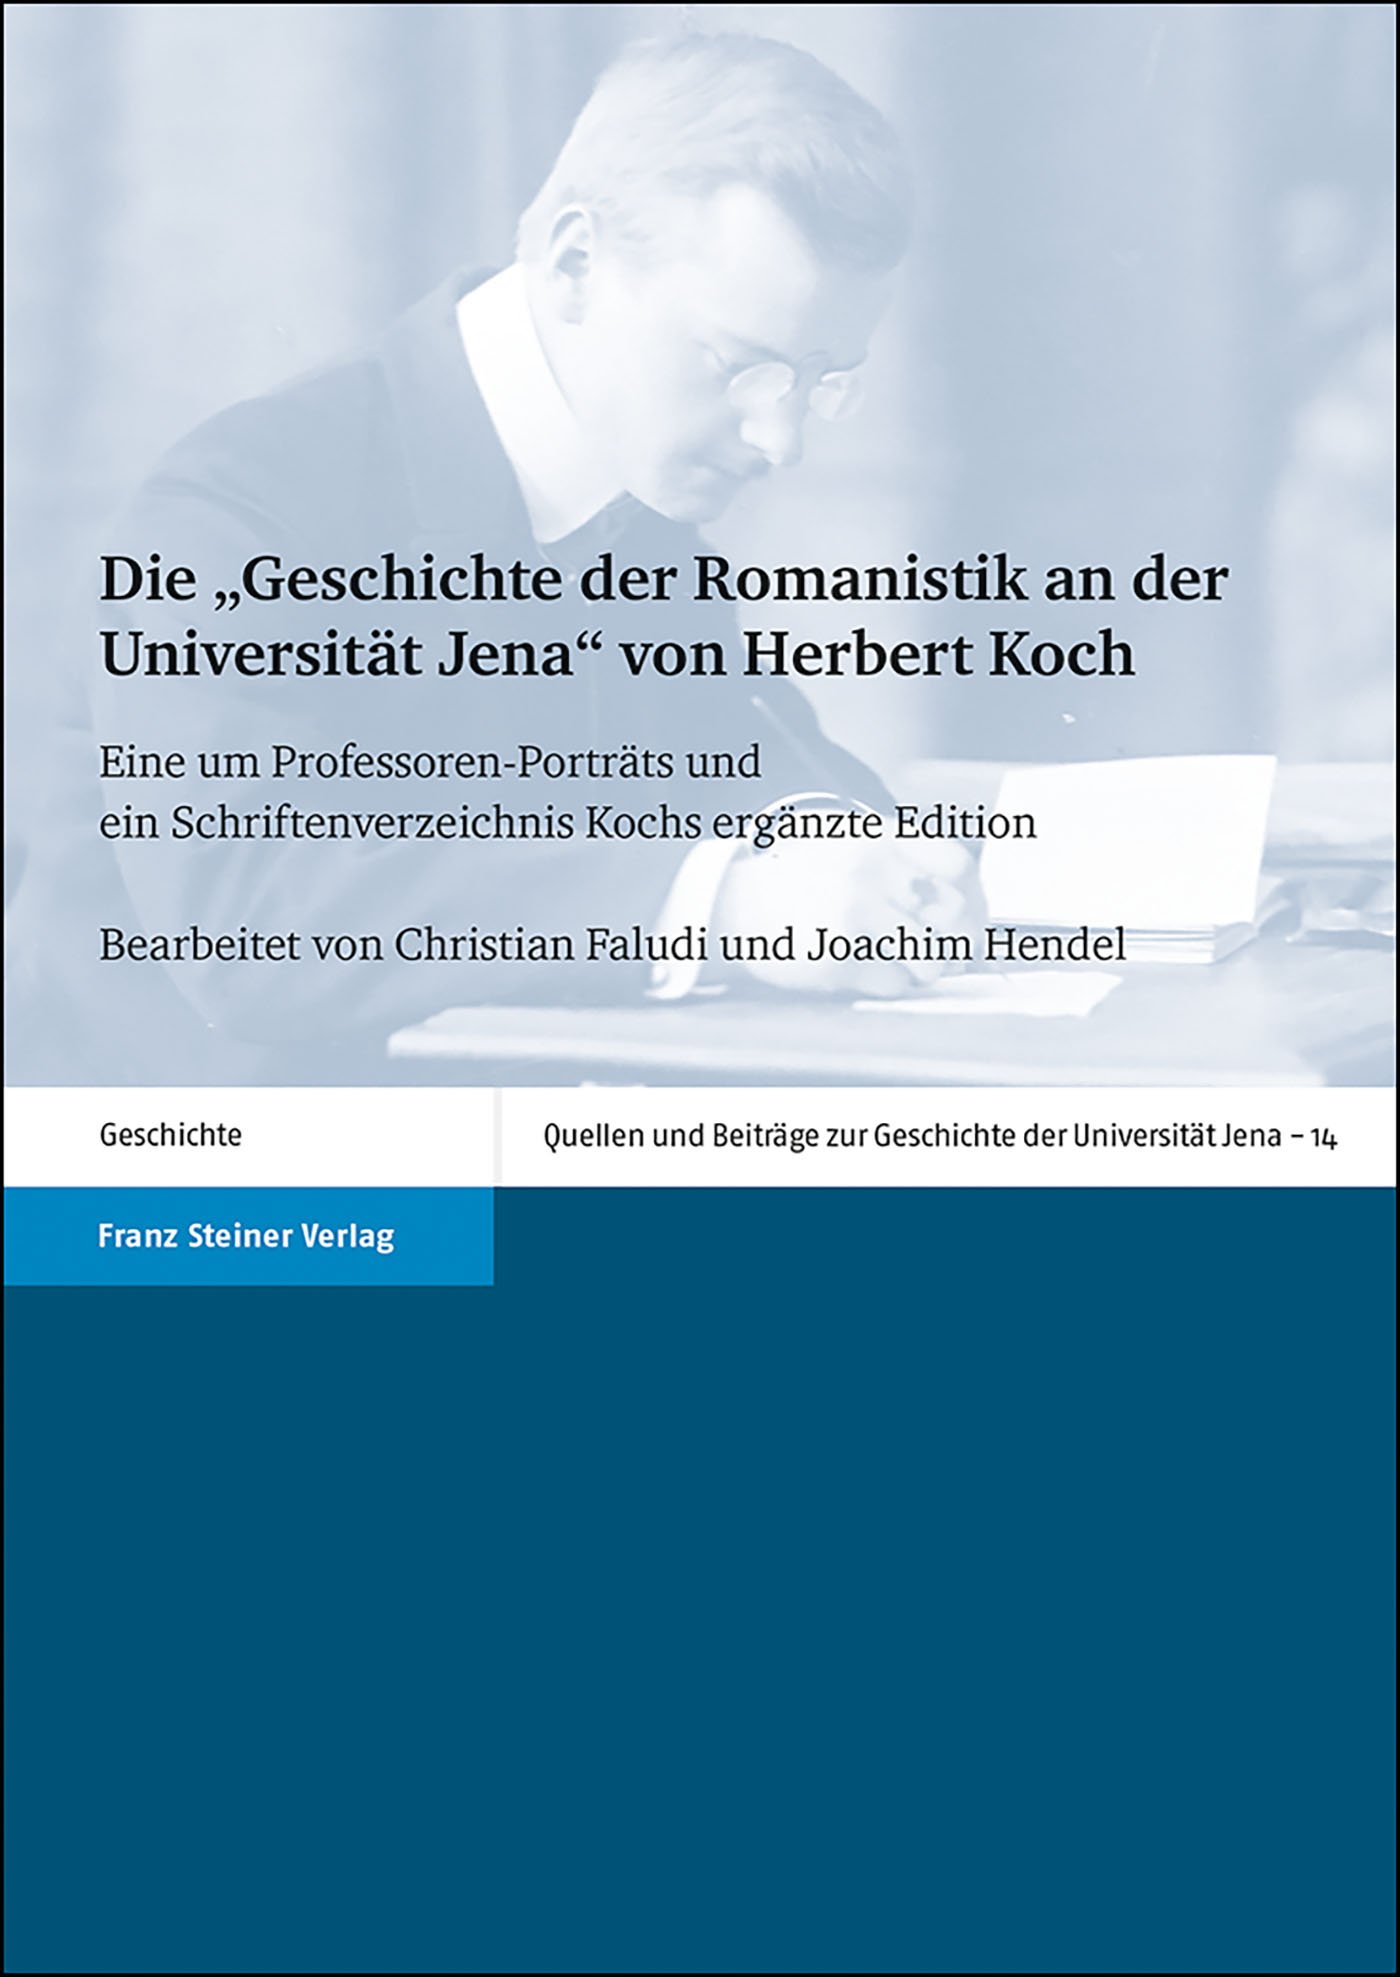 Die "Geschichte der Romanistik an der Universität Jena" von Herbert Koch